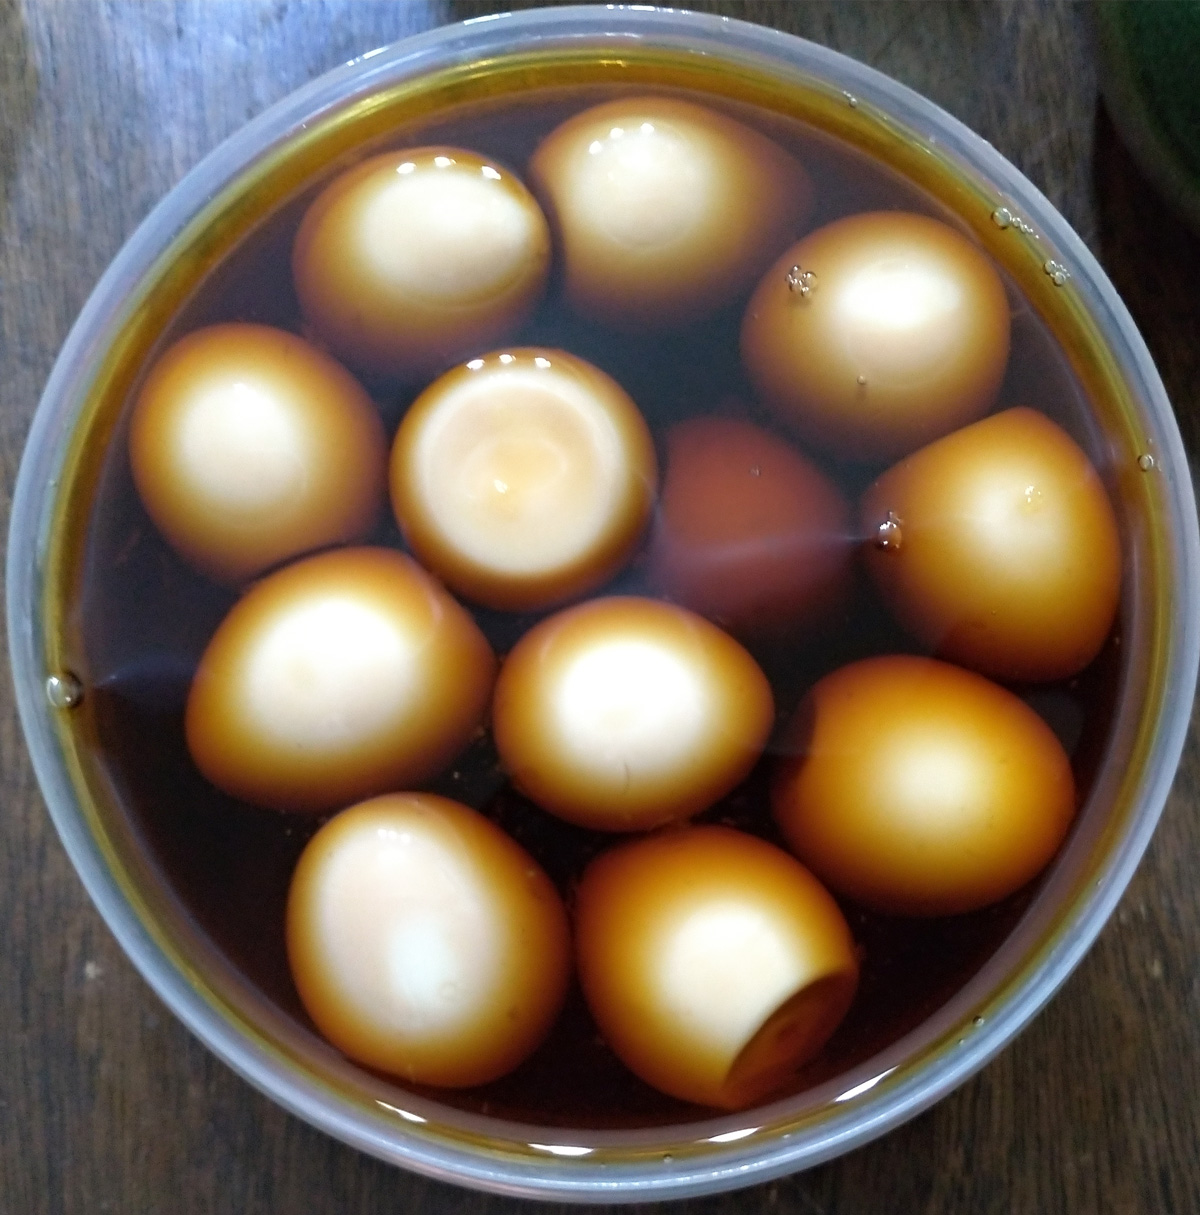 業務スーパーのうずらの卵でおつまみ味玉を作ってみた ゆにゃおじ食べ物ブログ